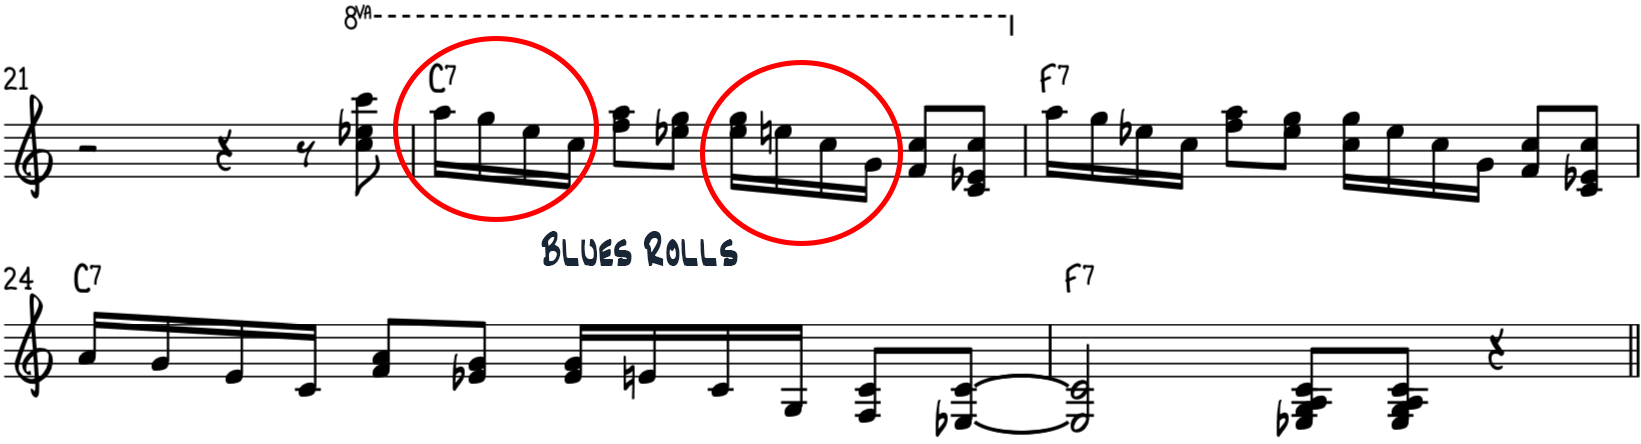 В промежуточном фанковом блюзовом фортепианном риффе 2 используются гармонизированные ноты и блюзовые партии.